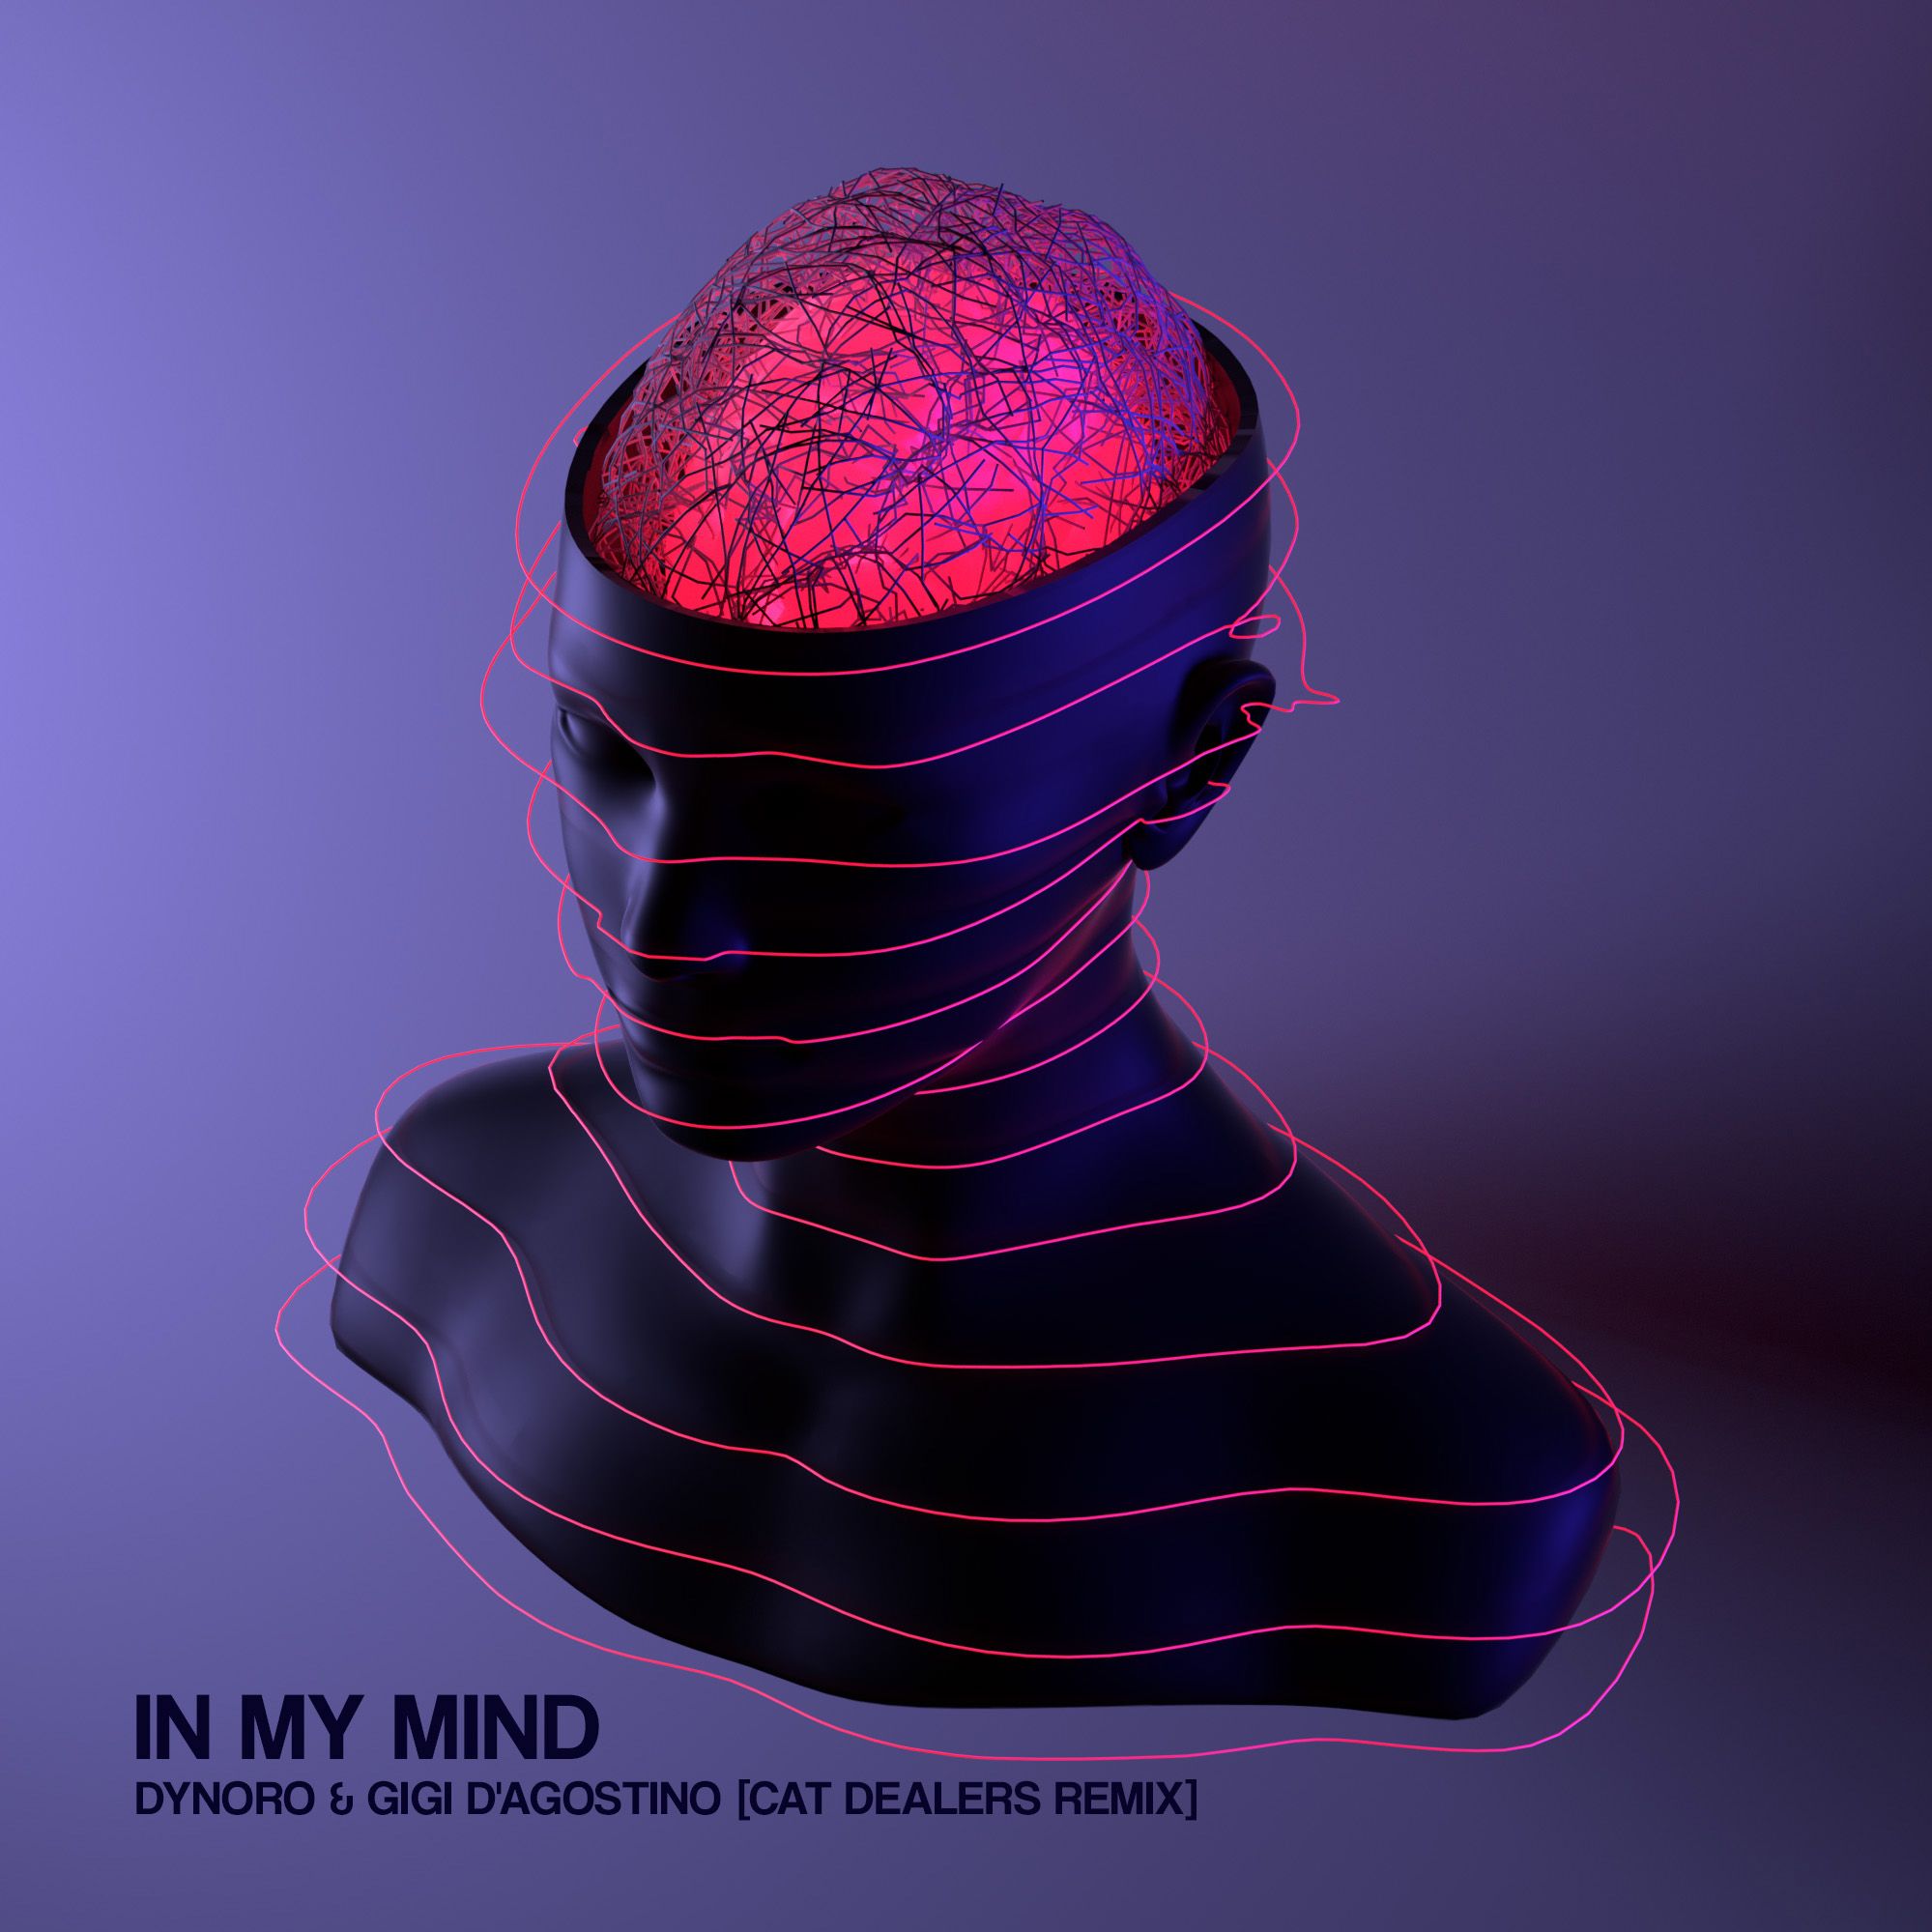 Stiahnuť ▼ In My Mind (Cat Dealers Remix)